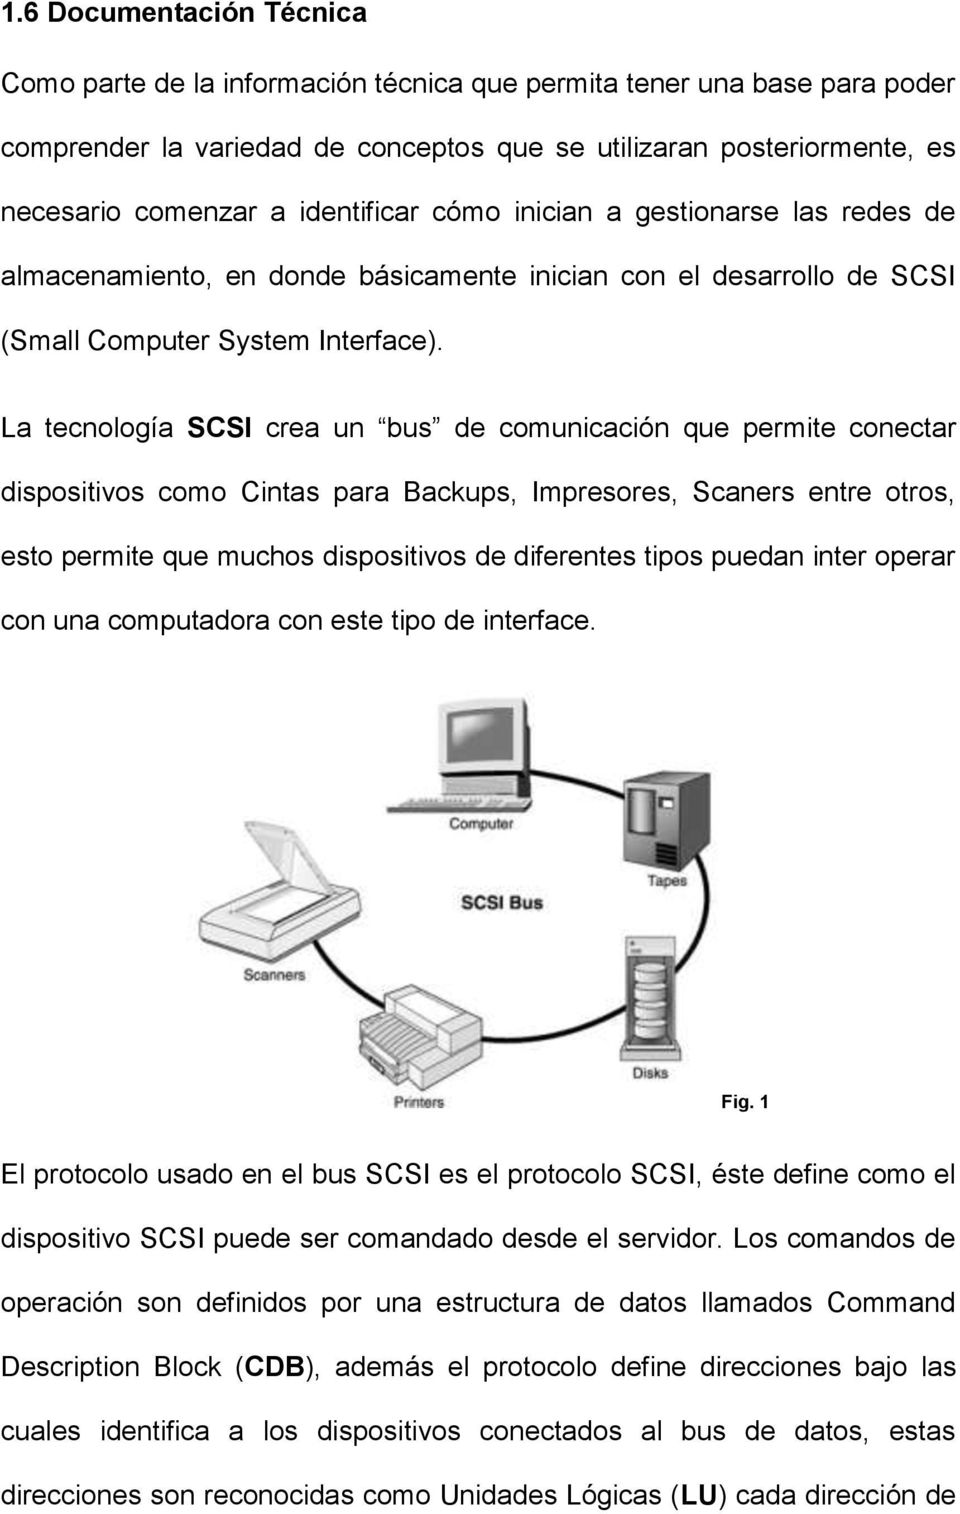 La tecnología SCSI crea un bus de comunicación que permite conectar dispositivos como Cintas para Backups, Impresores, Scaners entre otros, esto permite que muchos dispositivos de diferentes tipos